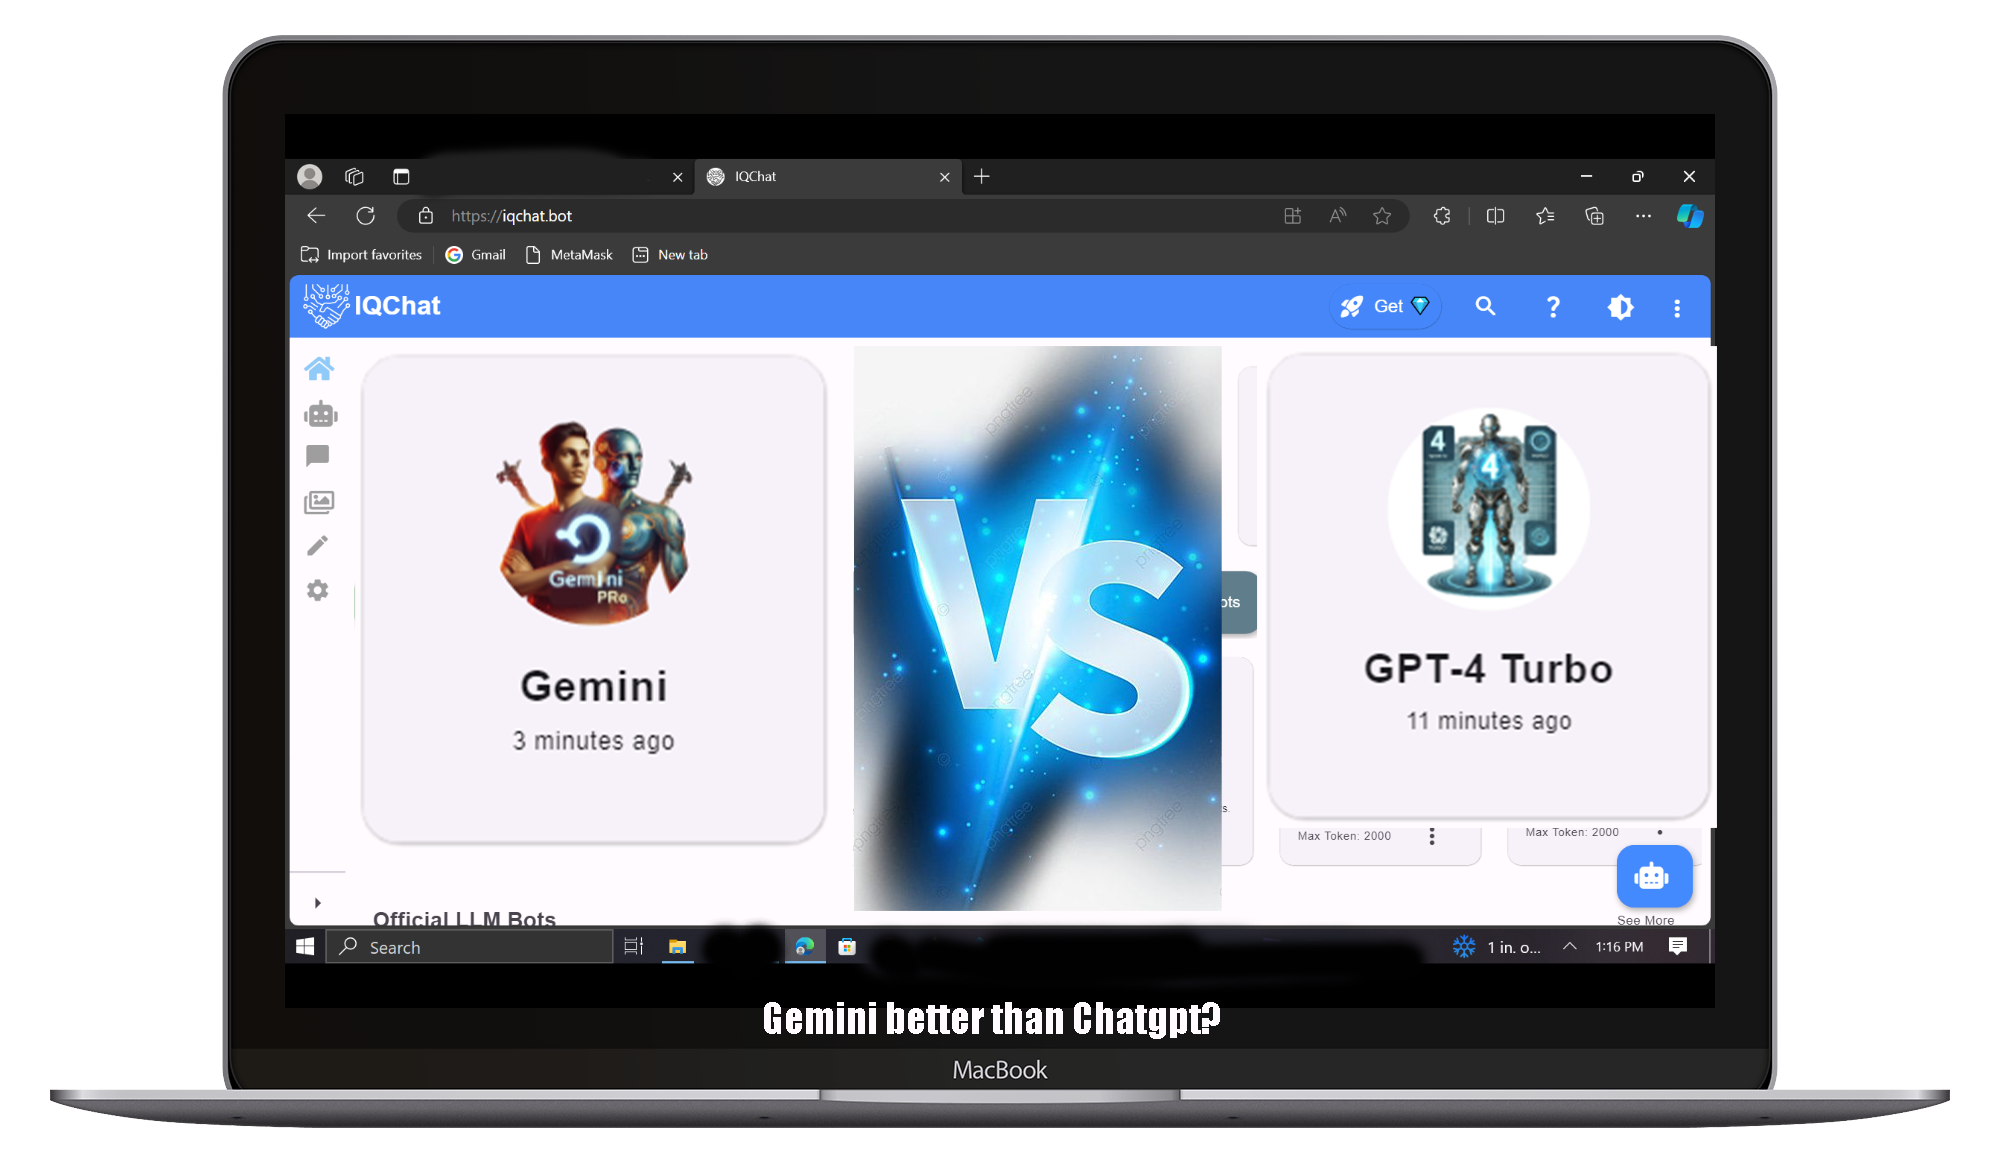  Gemini vs Chatgpt 